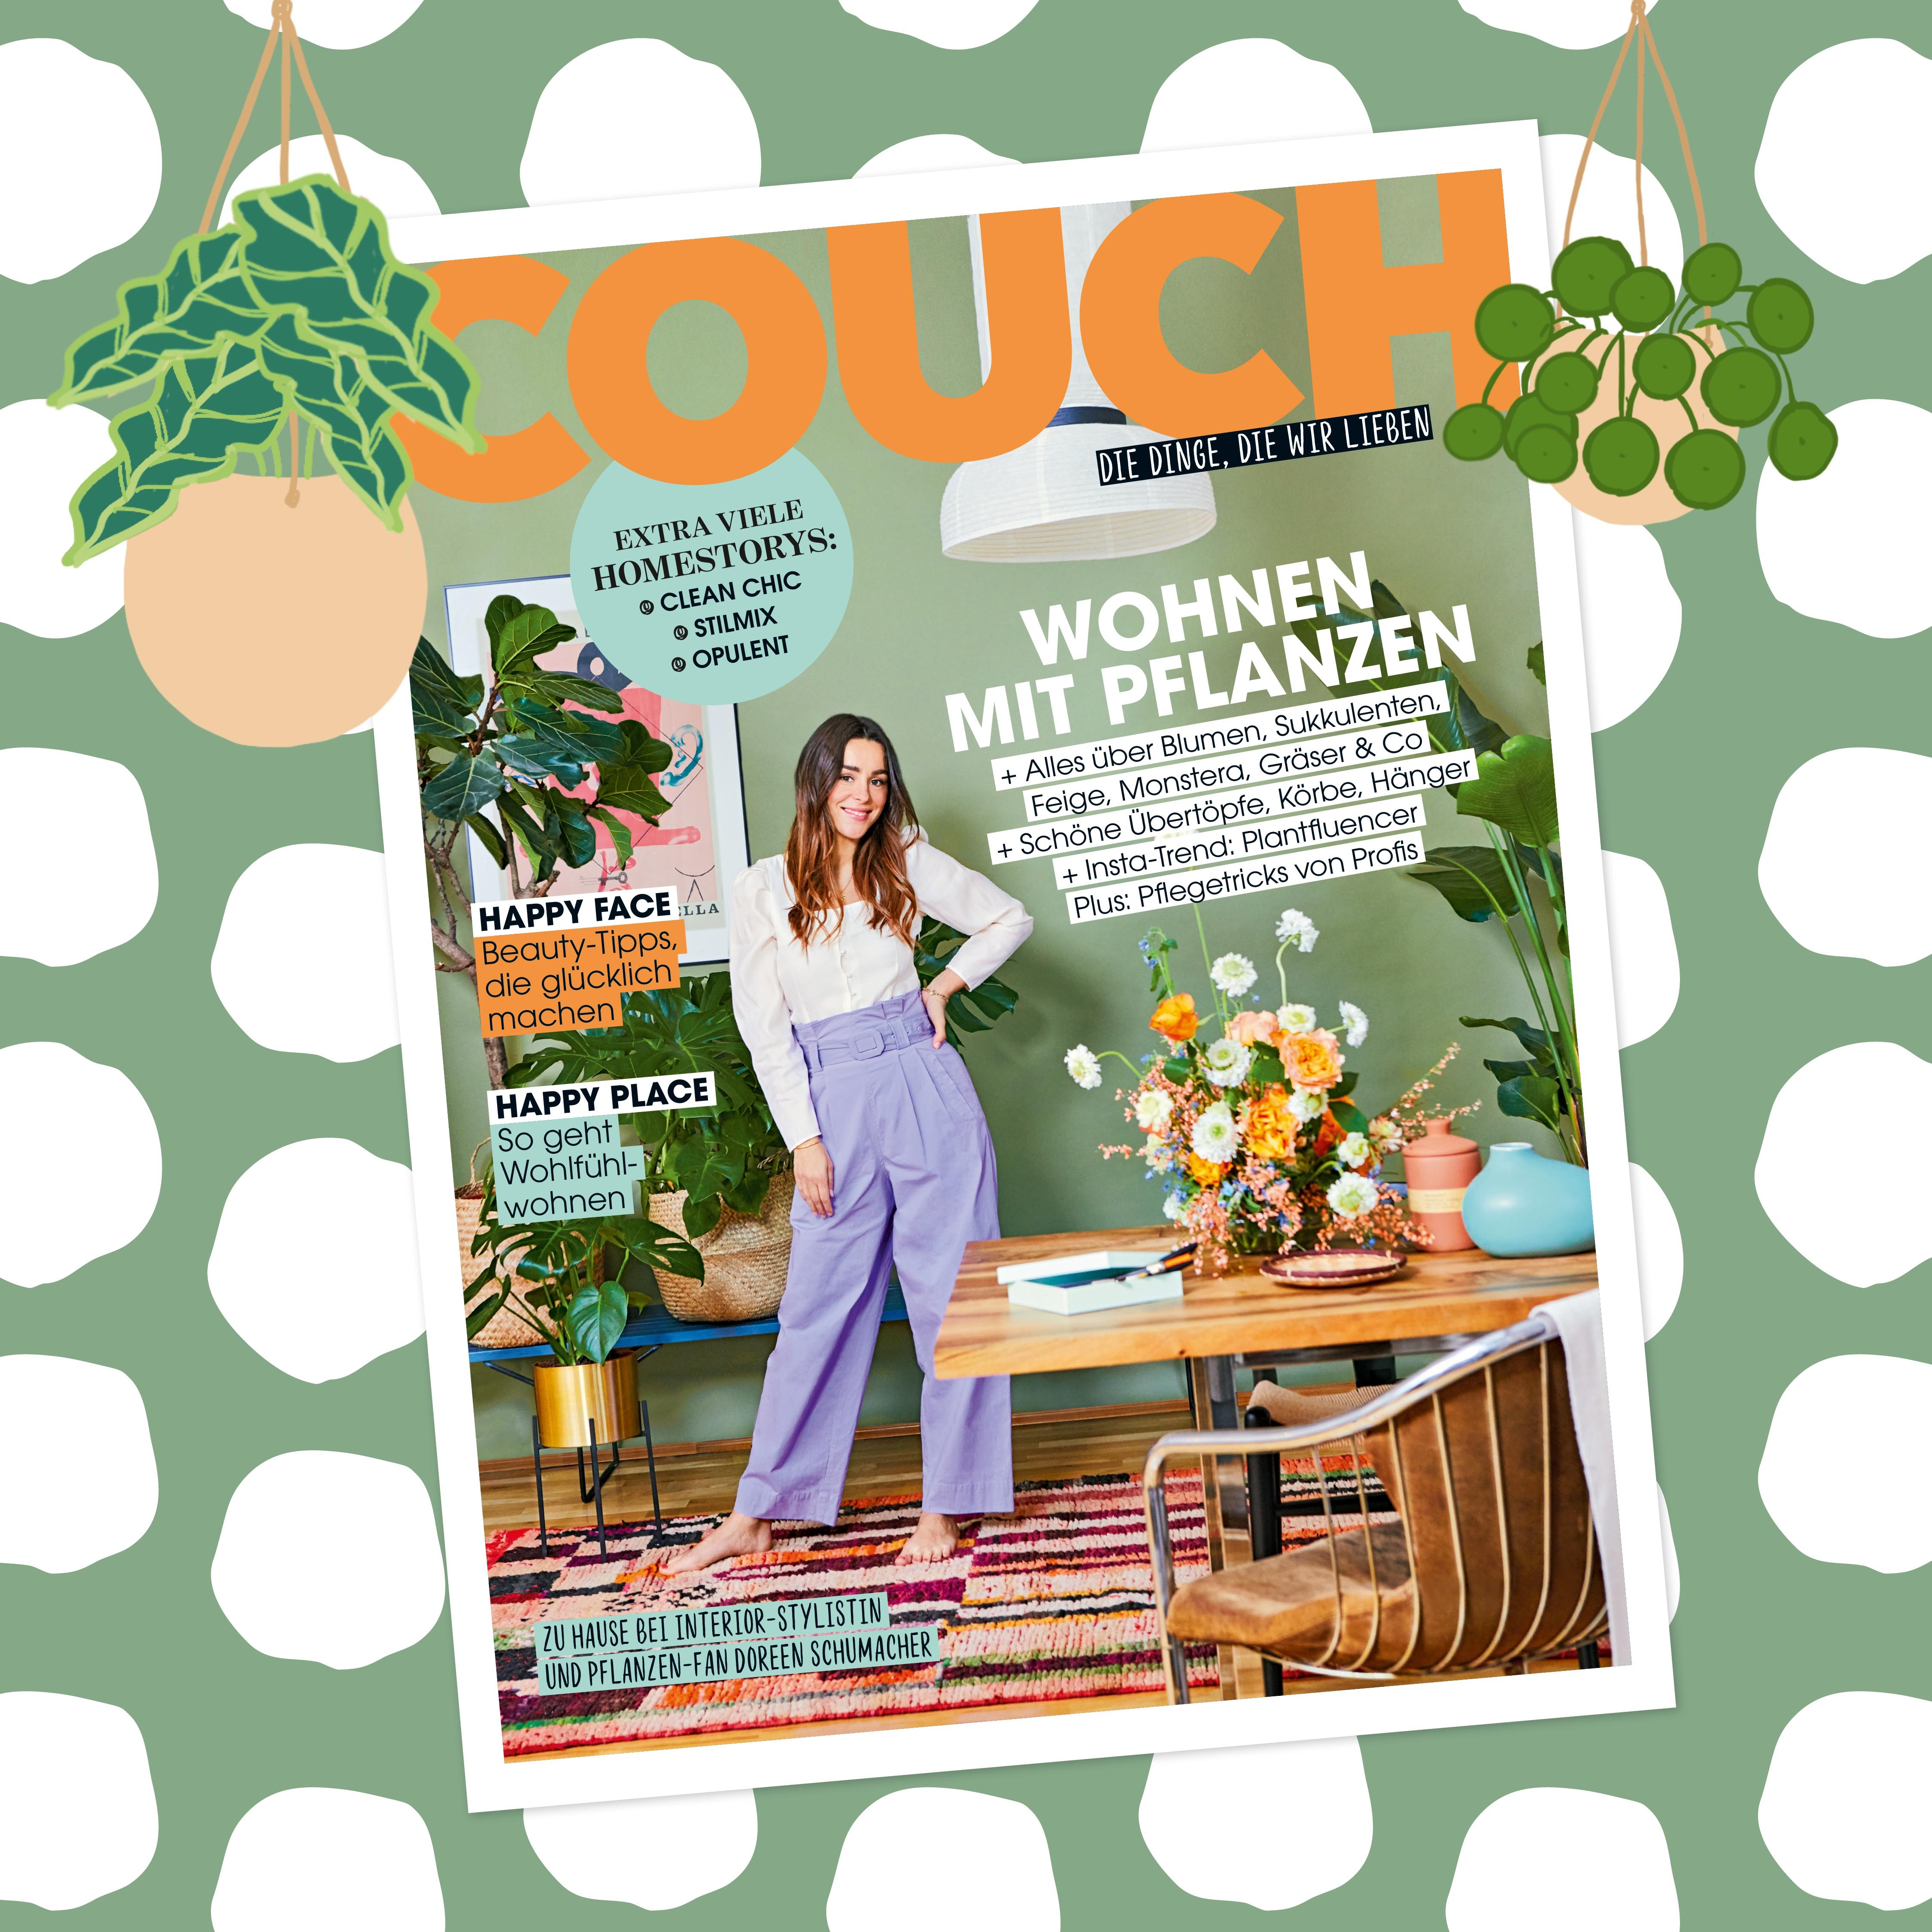 Unsere Happy-Ausgabe mit vielen Homestorys und Pflanzen-Special ist da! Am Kiosk oder online --> #COUCHabo #COUCHMagazin